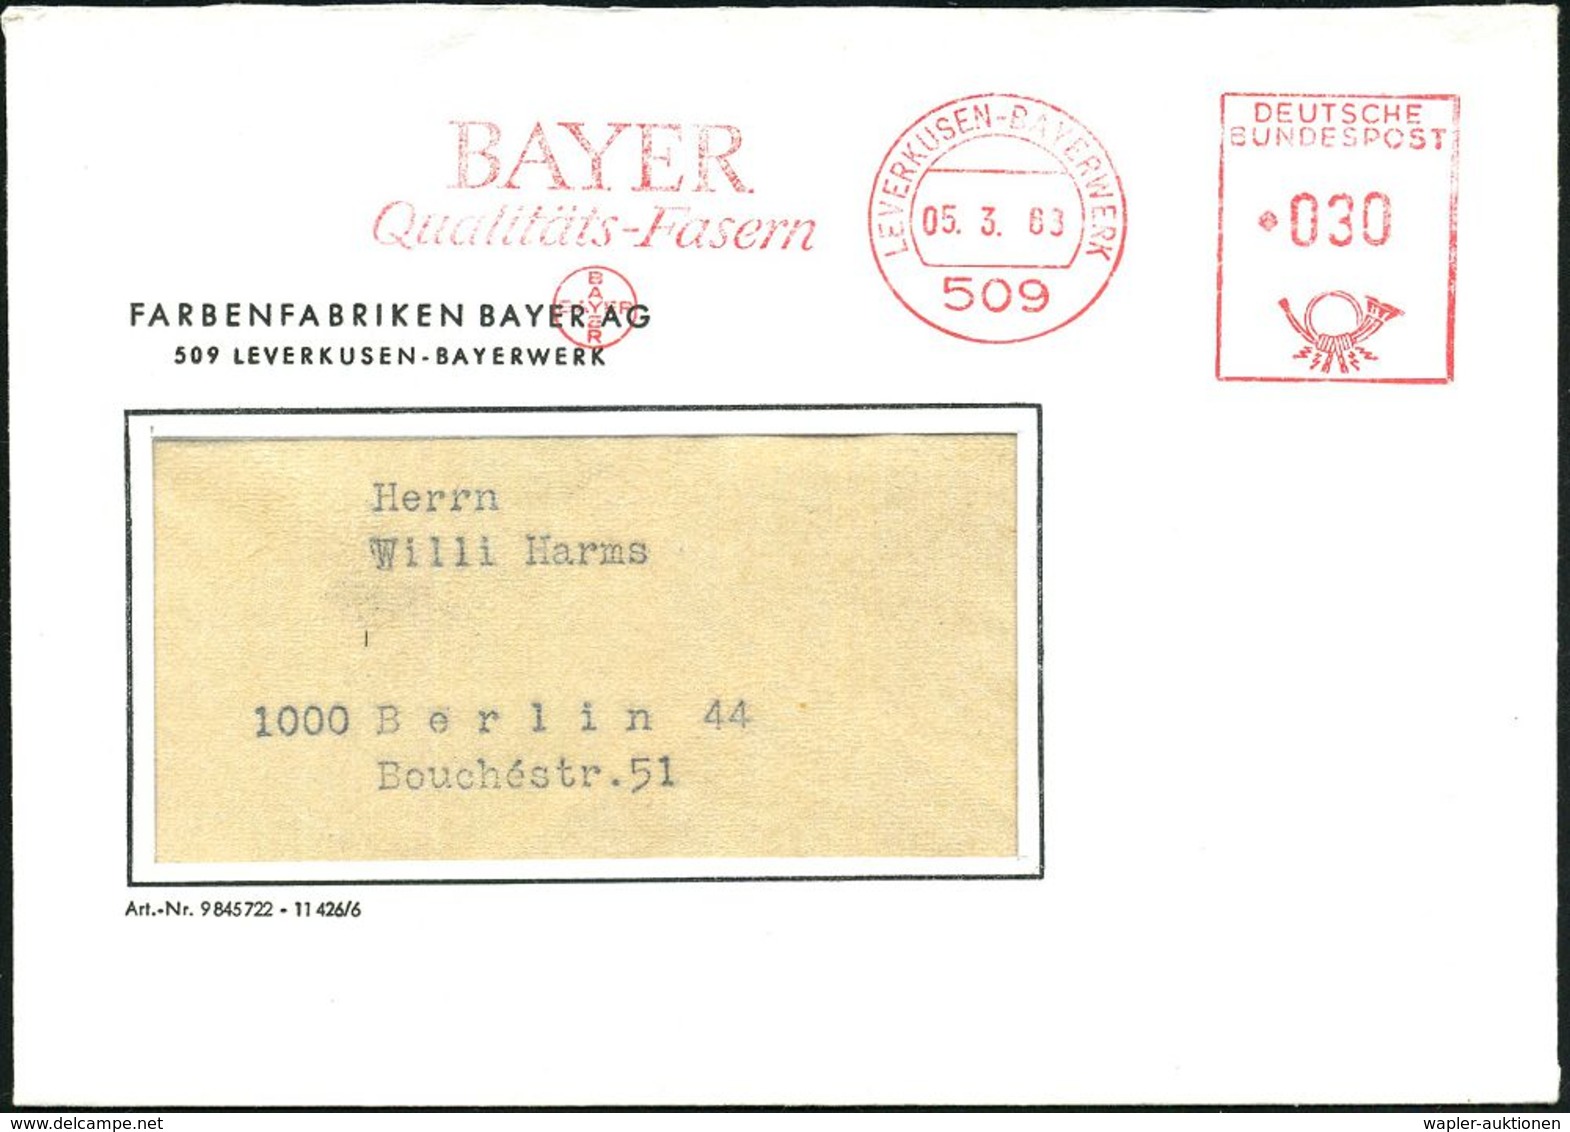 509 LEVERKUSEN-BAYERWERK/ BAYER/ Qualitäts-Fasern 1968 (5.3.) AFS = Hauspostamt Bayer-Werk (Logo) Firmen-Fernbrief (Dü.E - Chemie